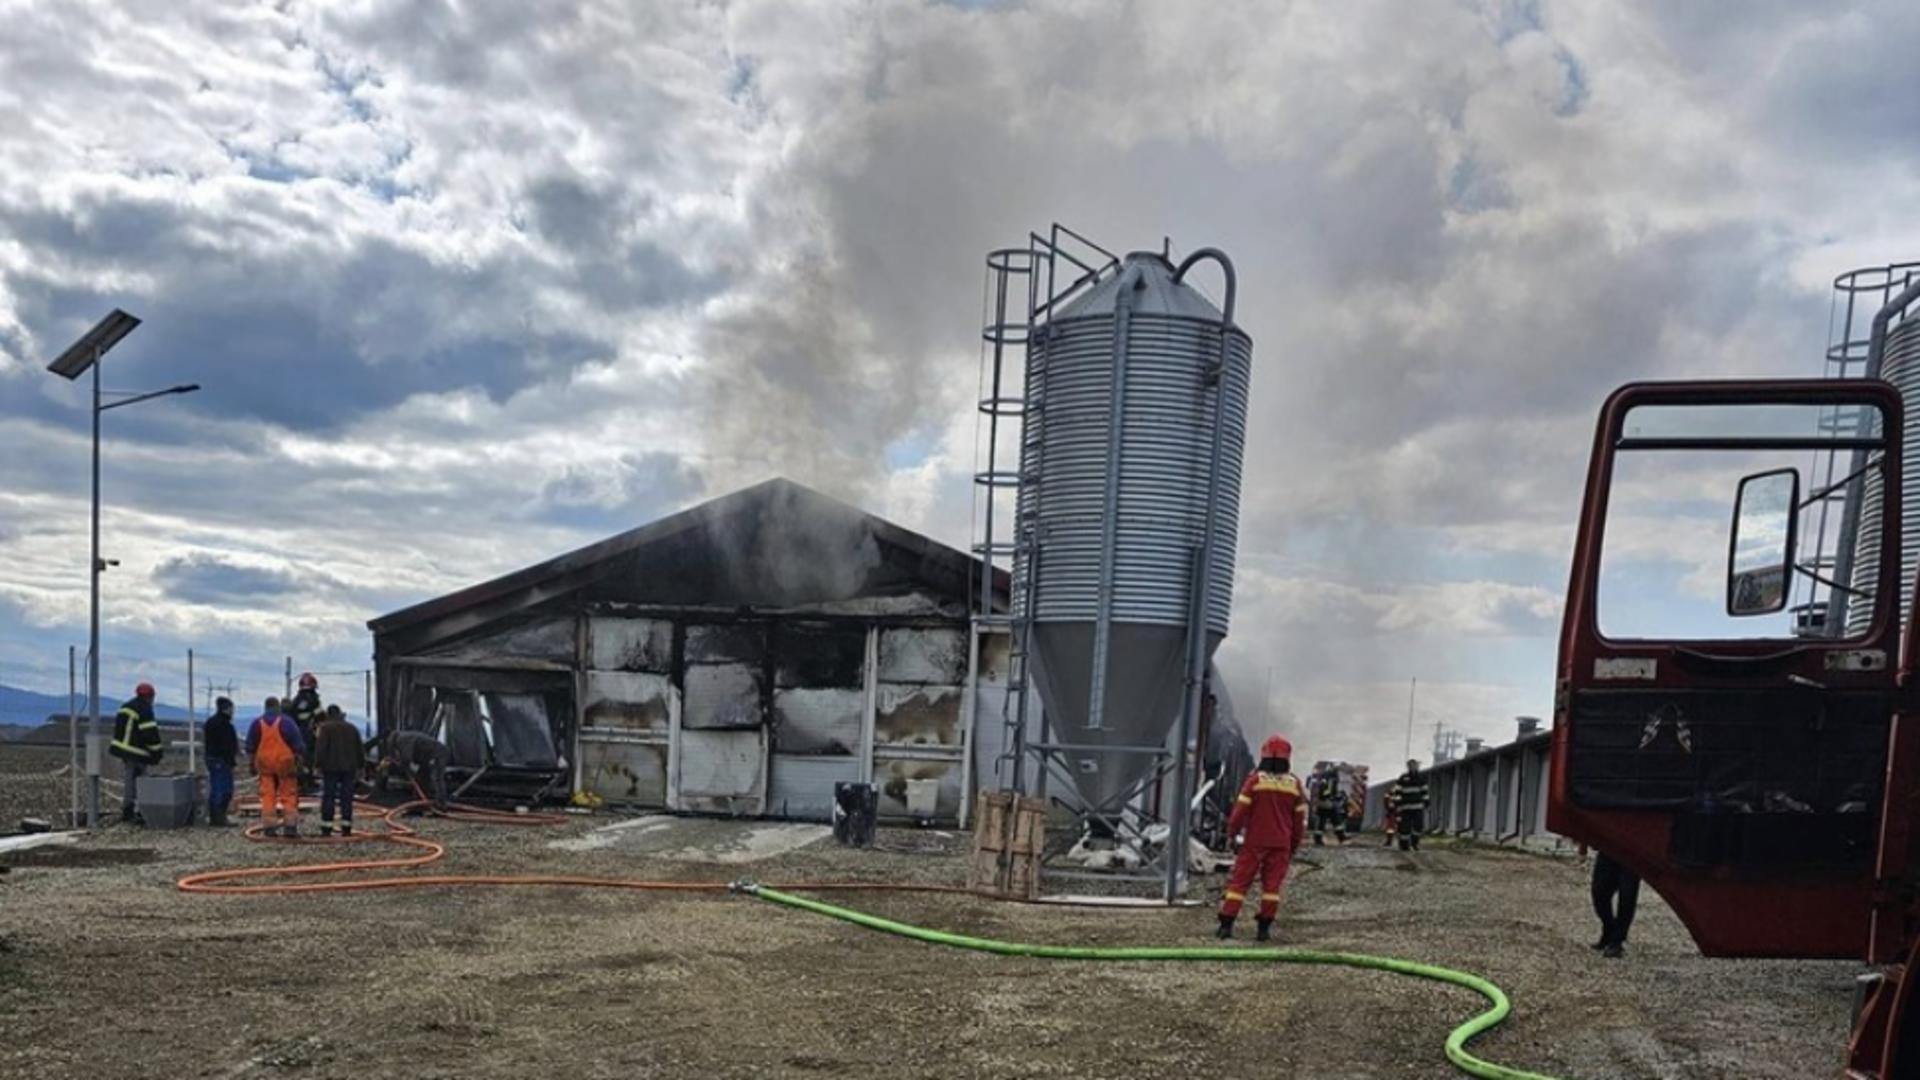 Incendiu violent și devastator la o fermă din Brașov. A luat foc o hală în care erau depozitate paie